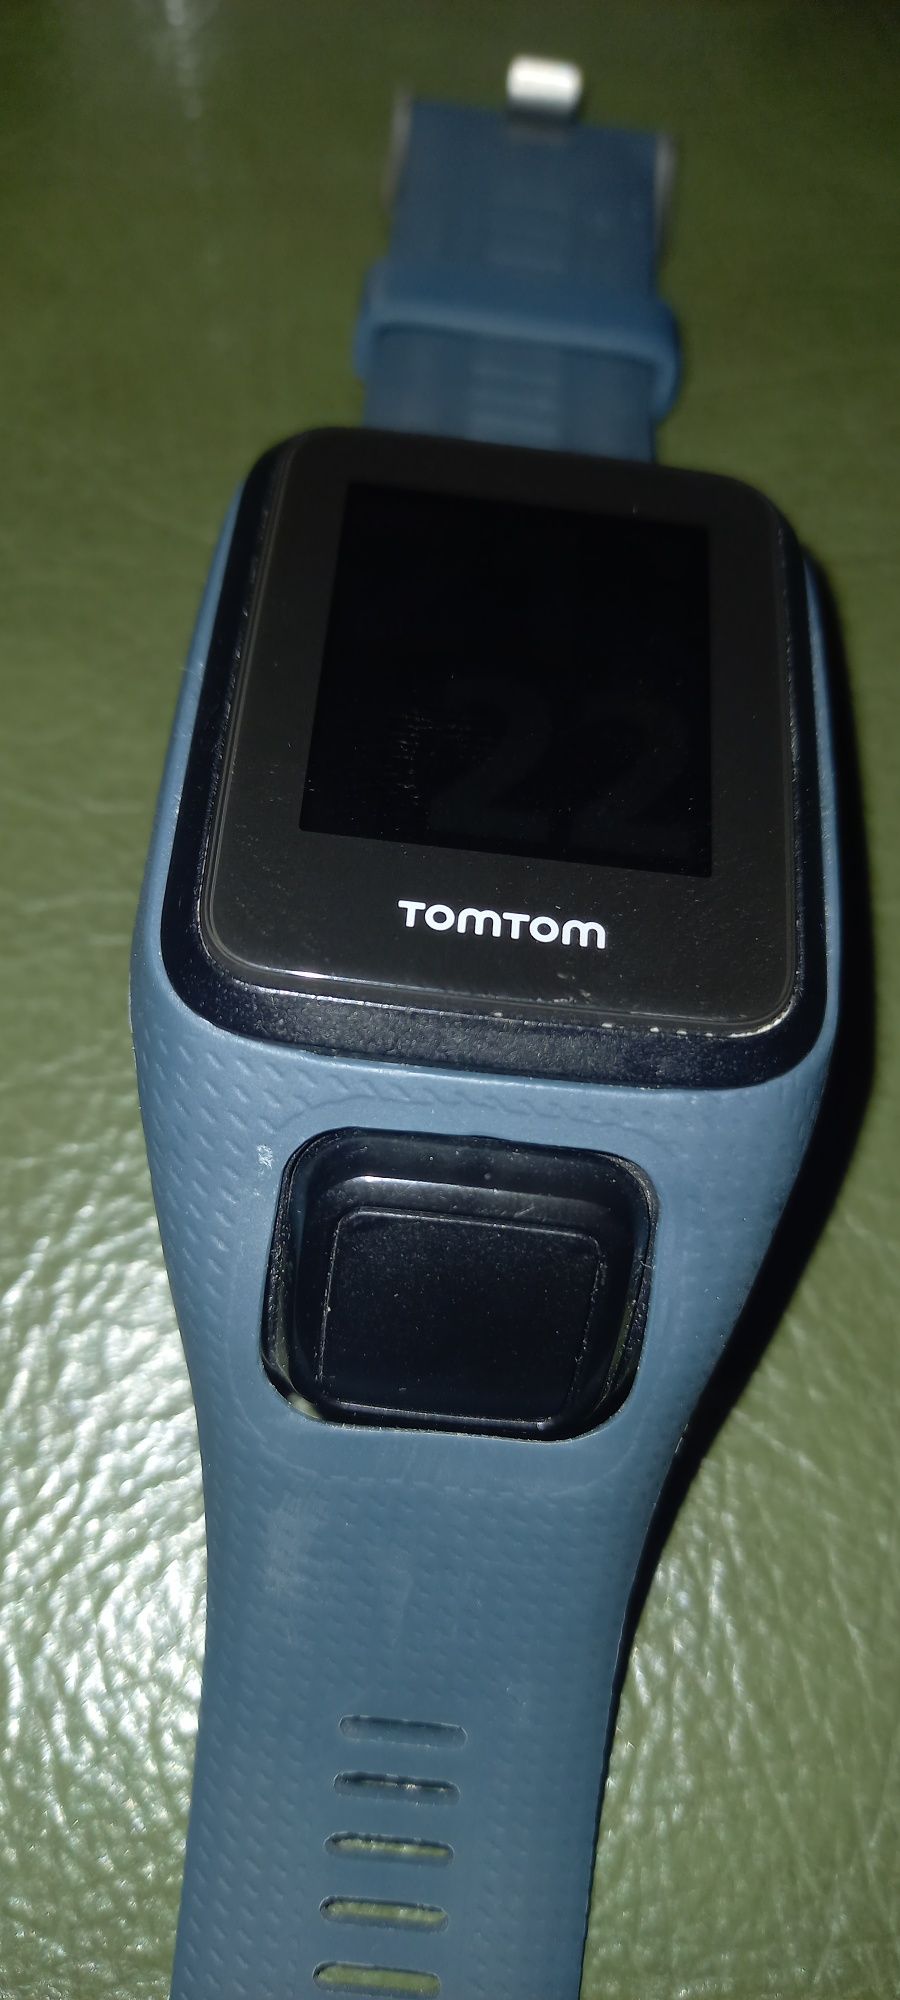 Smartwatch, zegarek GPS, tom tom spark Cardio + music